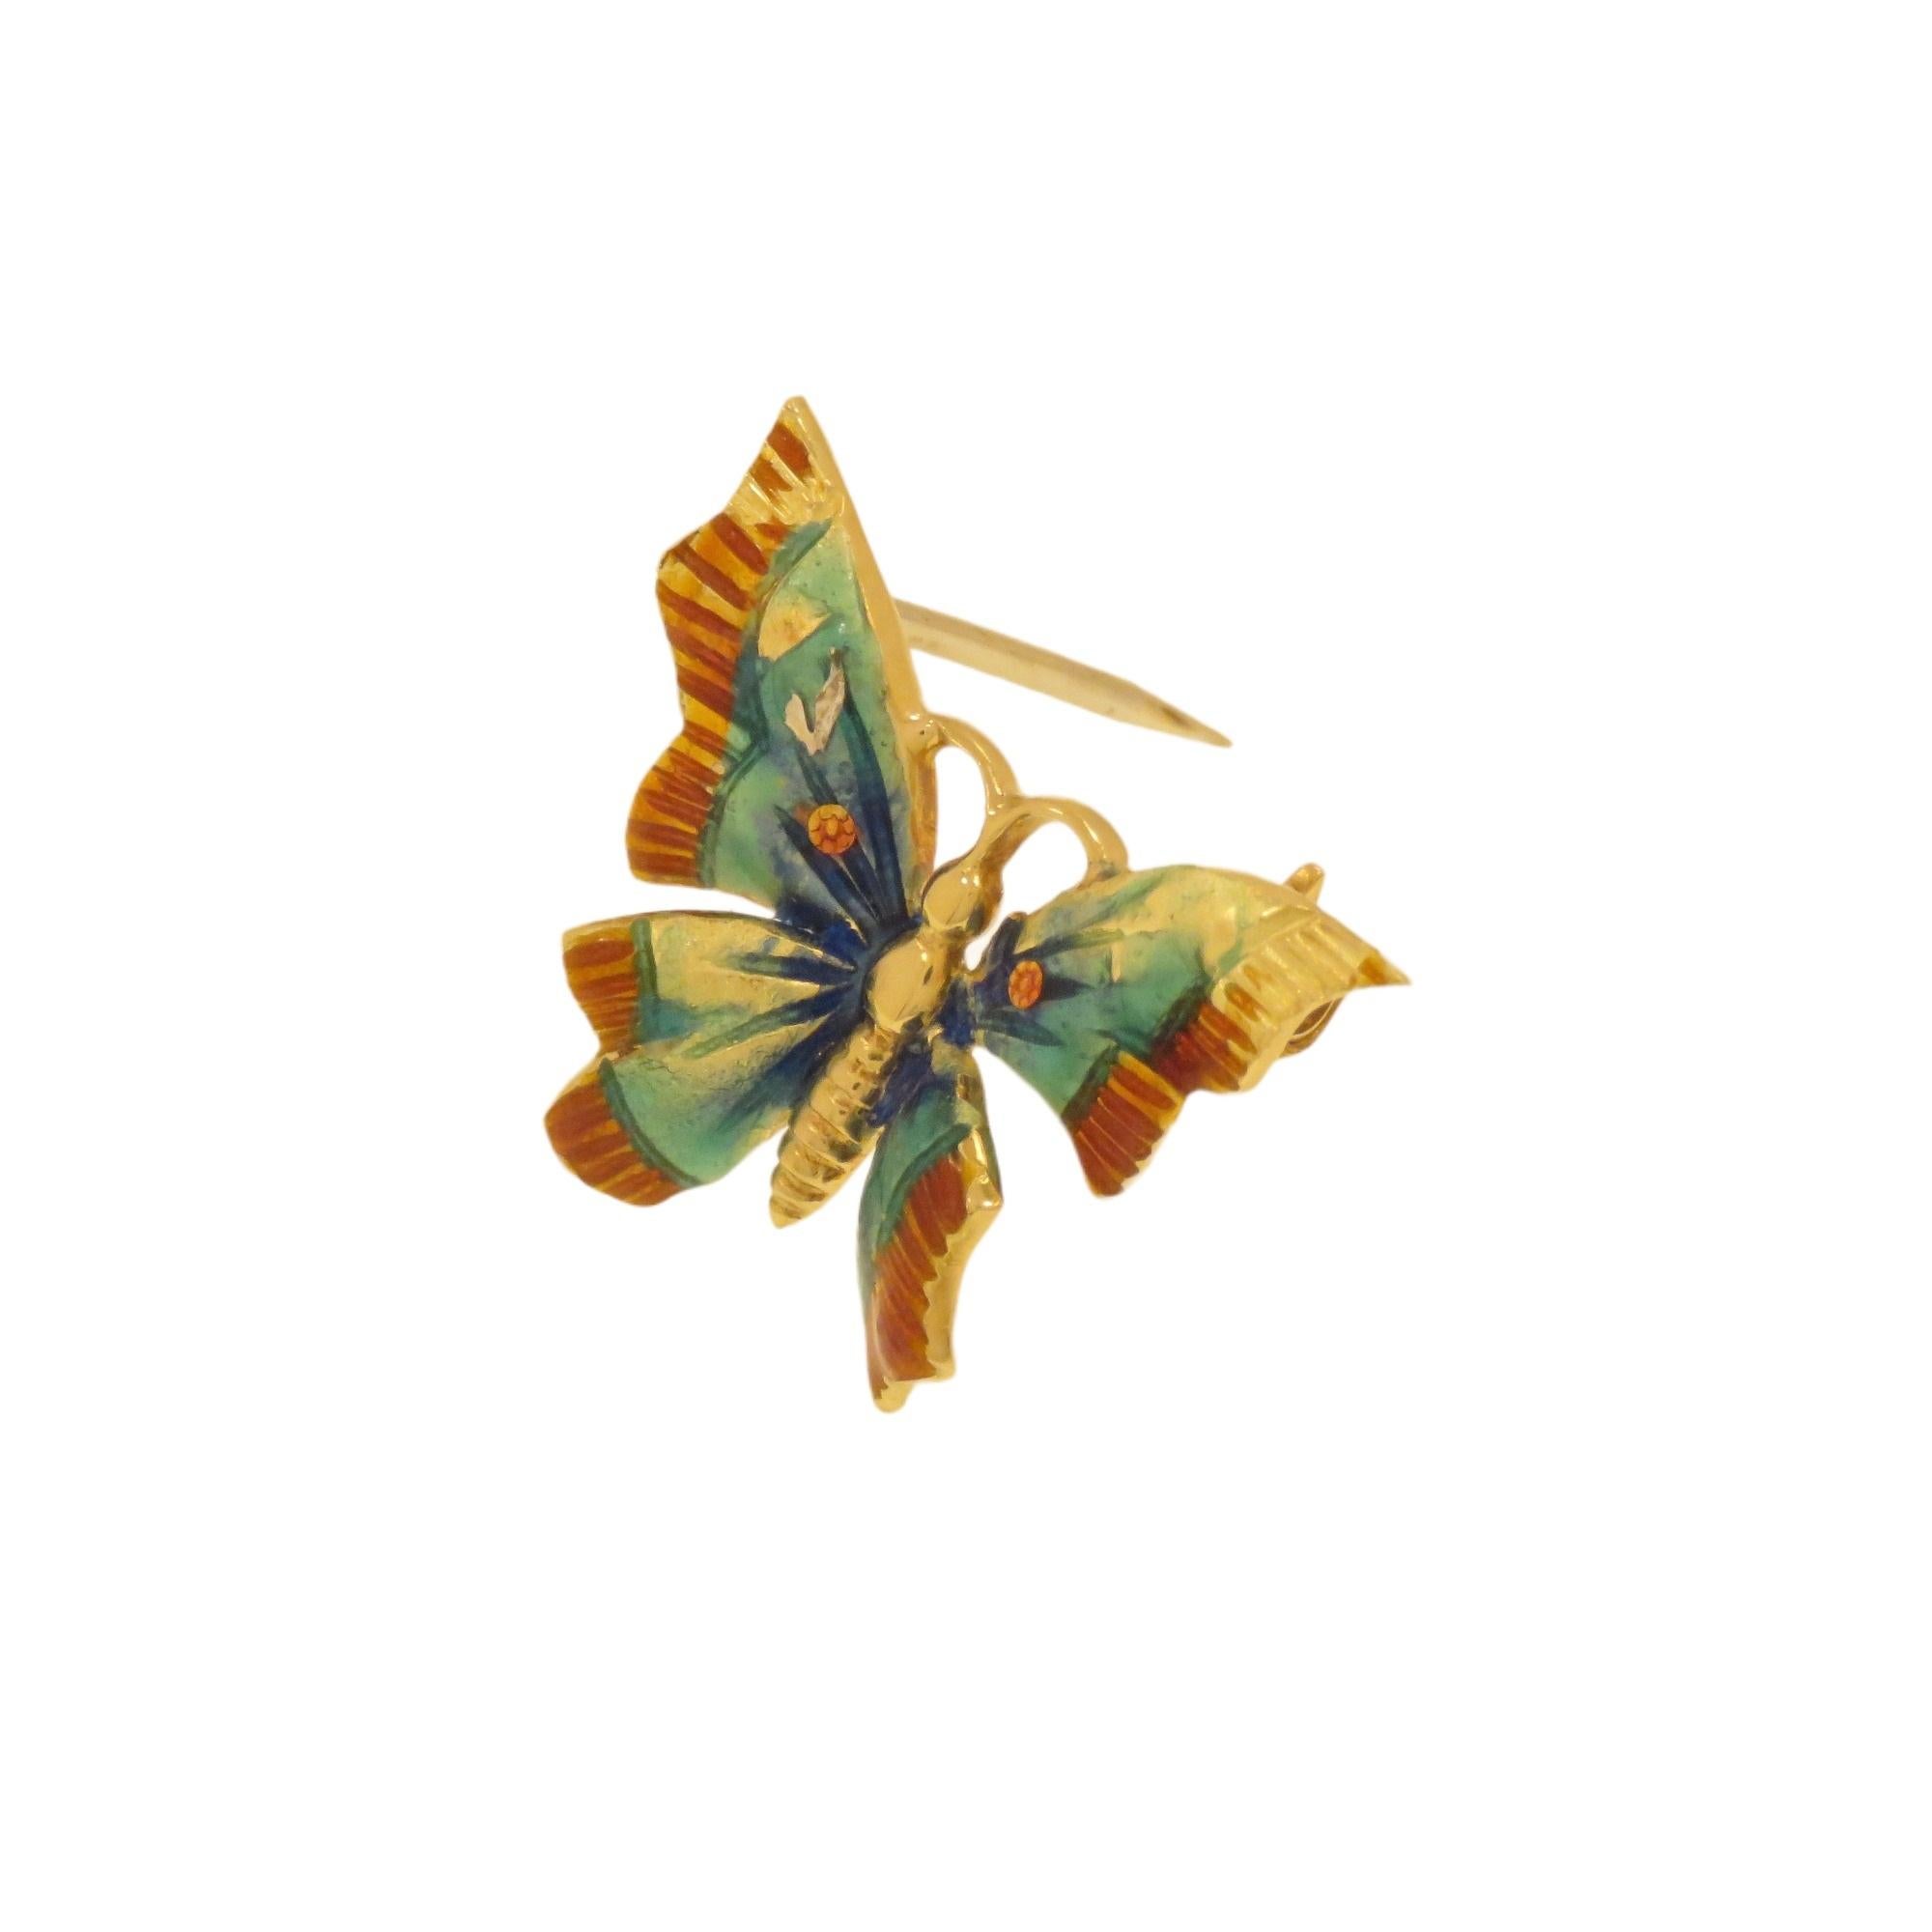 Elegante e graziosa piccola spilla d'epoca a forma di farfalla realizzata in oro giallo 18 carati. Le ali sono smaltate a fuoco in più colori sulle tonalità dal giallo al marrone. Realizzata a mano in Italia nel 1970 circa. Le dimensioni della